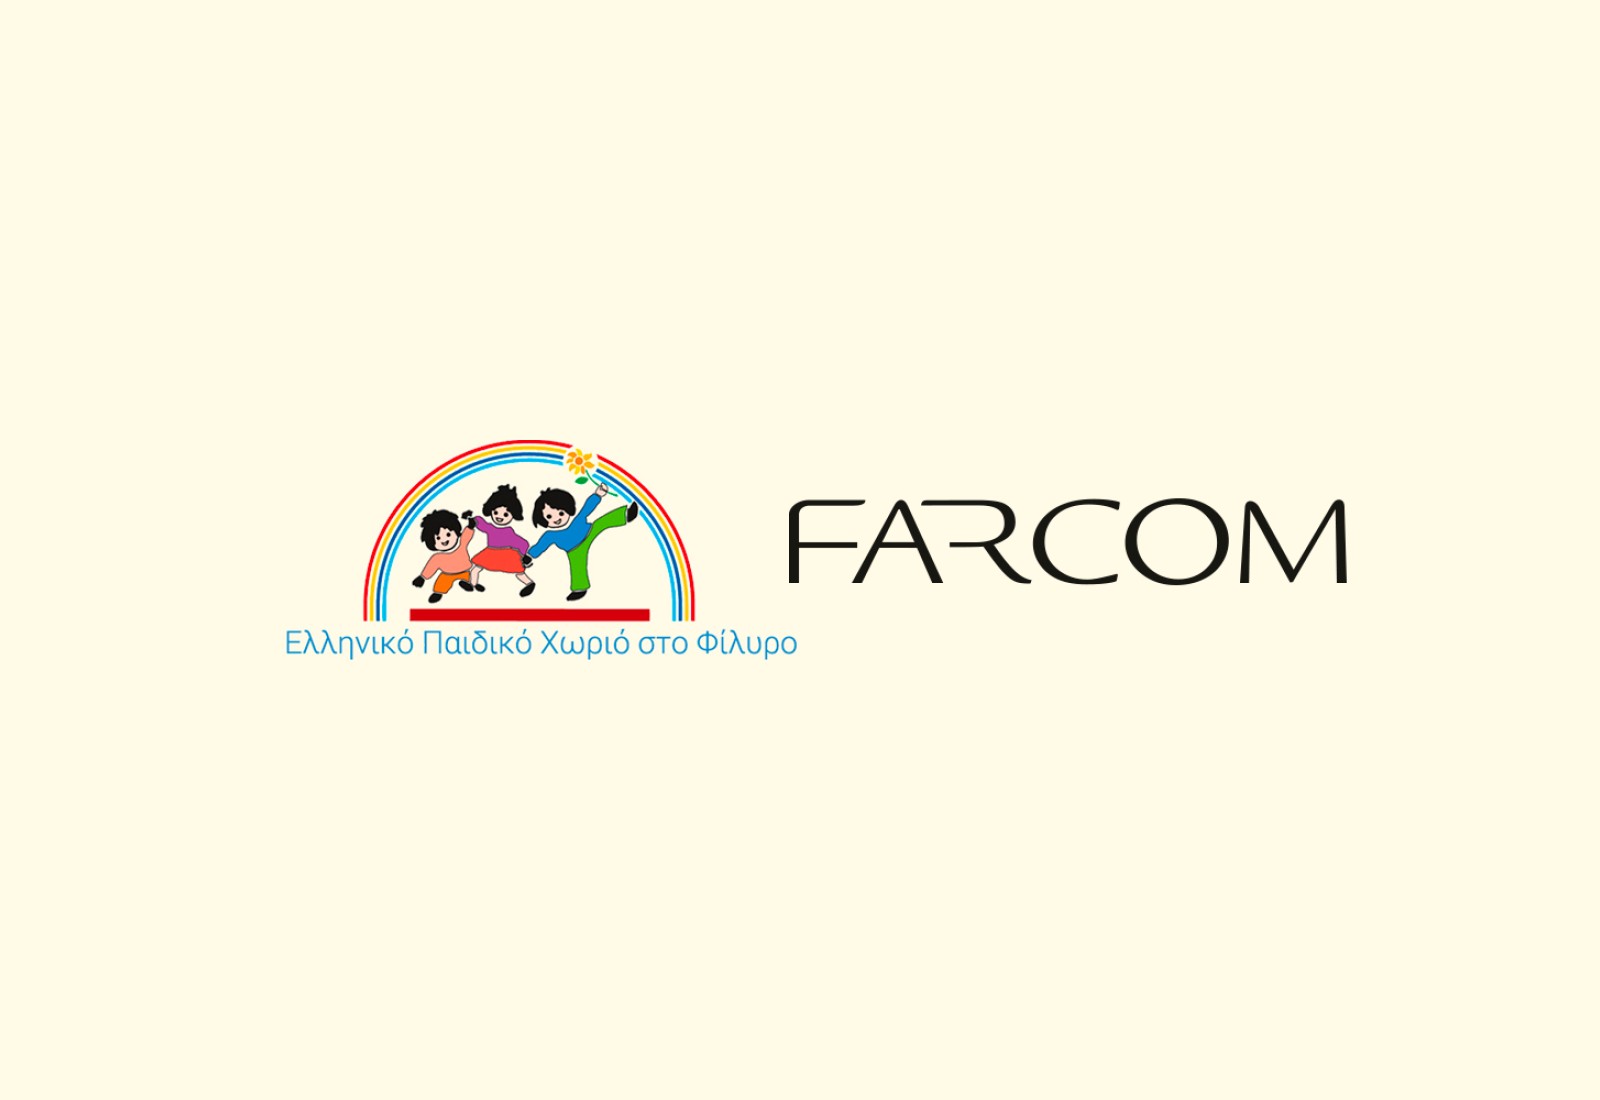 Η Farcom δίπλα στα παιδιά του ΕΛΛHΝΙΚΟΥ ΠΑΙΔΙΚΟΥ ΧΩΡΙΟΥ στο Φίλυρο.